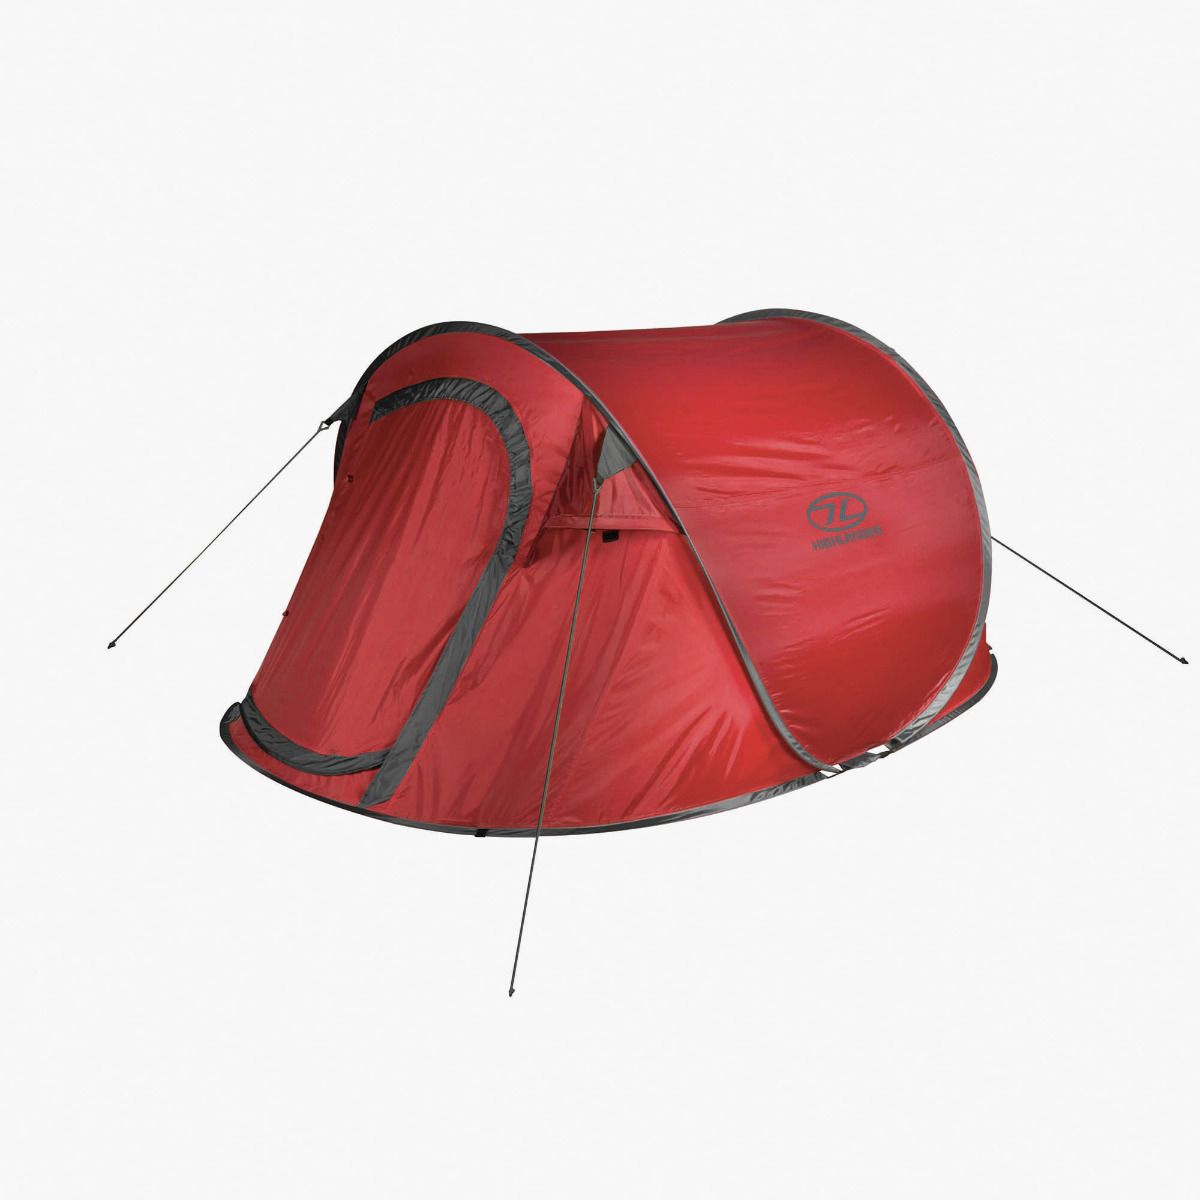 Pop Up Tents - The Expert Camper